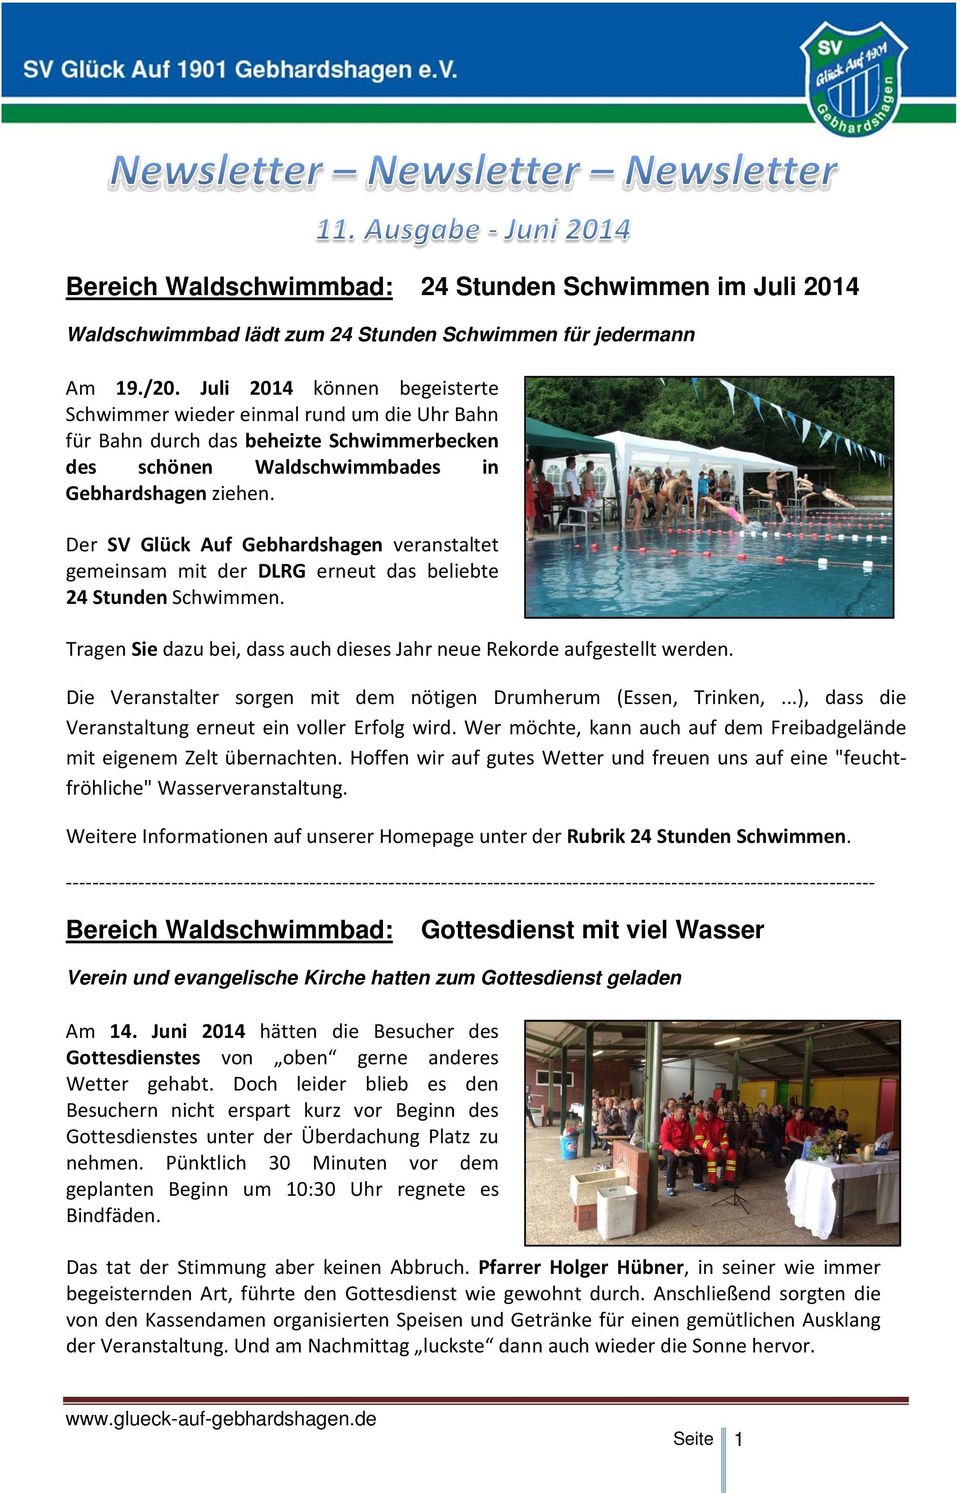 Der SV Glück Auf Gebhardshagen veranstaltet gemeinsam mit der DLRG erneut das beliebte 24 Stunden Schwimmen. Tragen Sie dazu bei, dass auch dieses Jahr neue Rekorde aufgestellt werden.